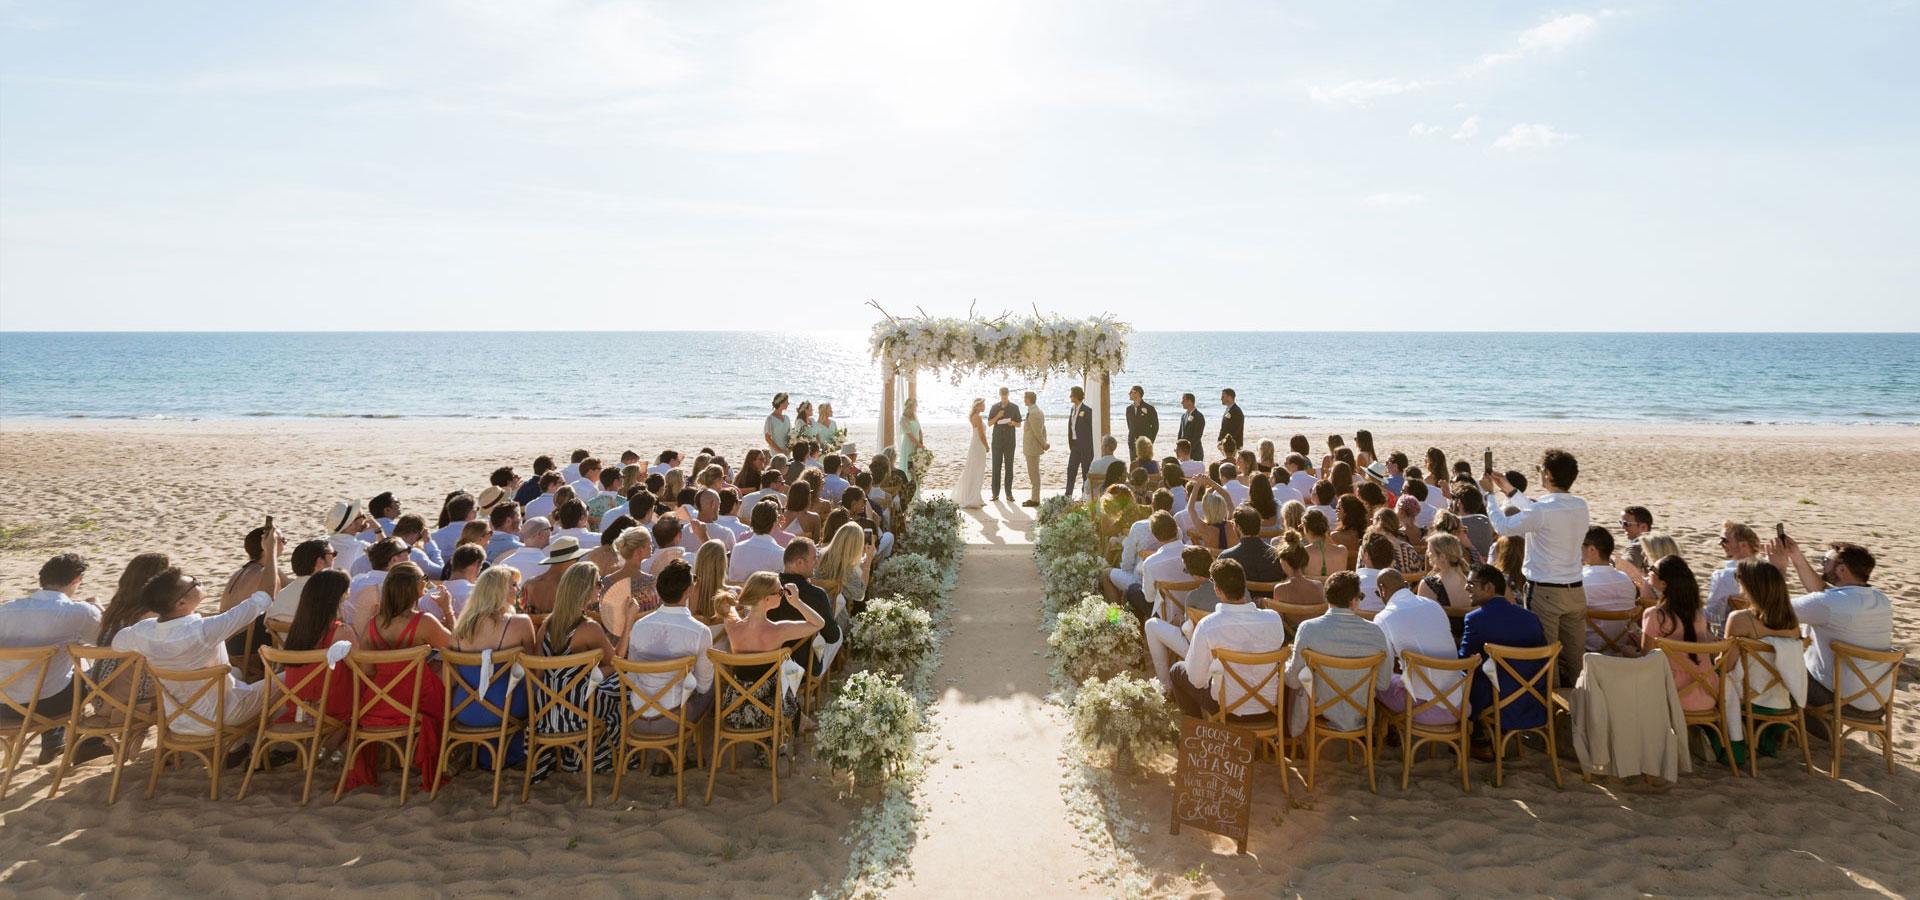 Ce trebuie să știi atunci când organizezi o nuntă pe plajă